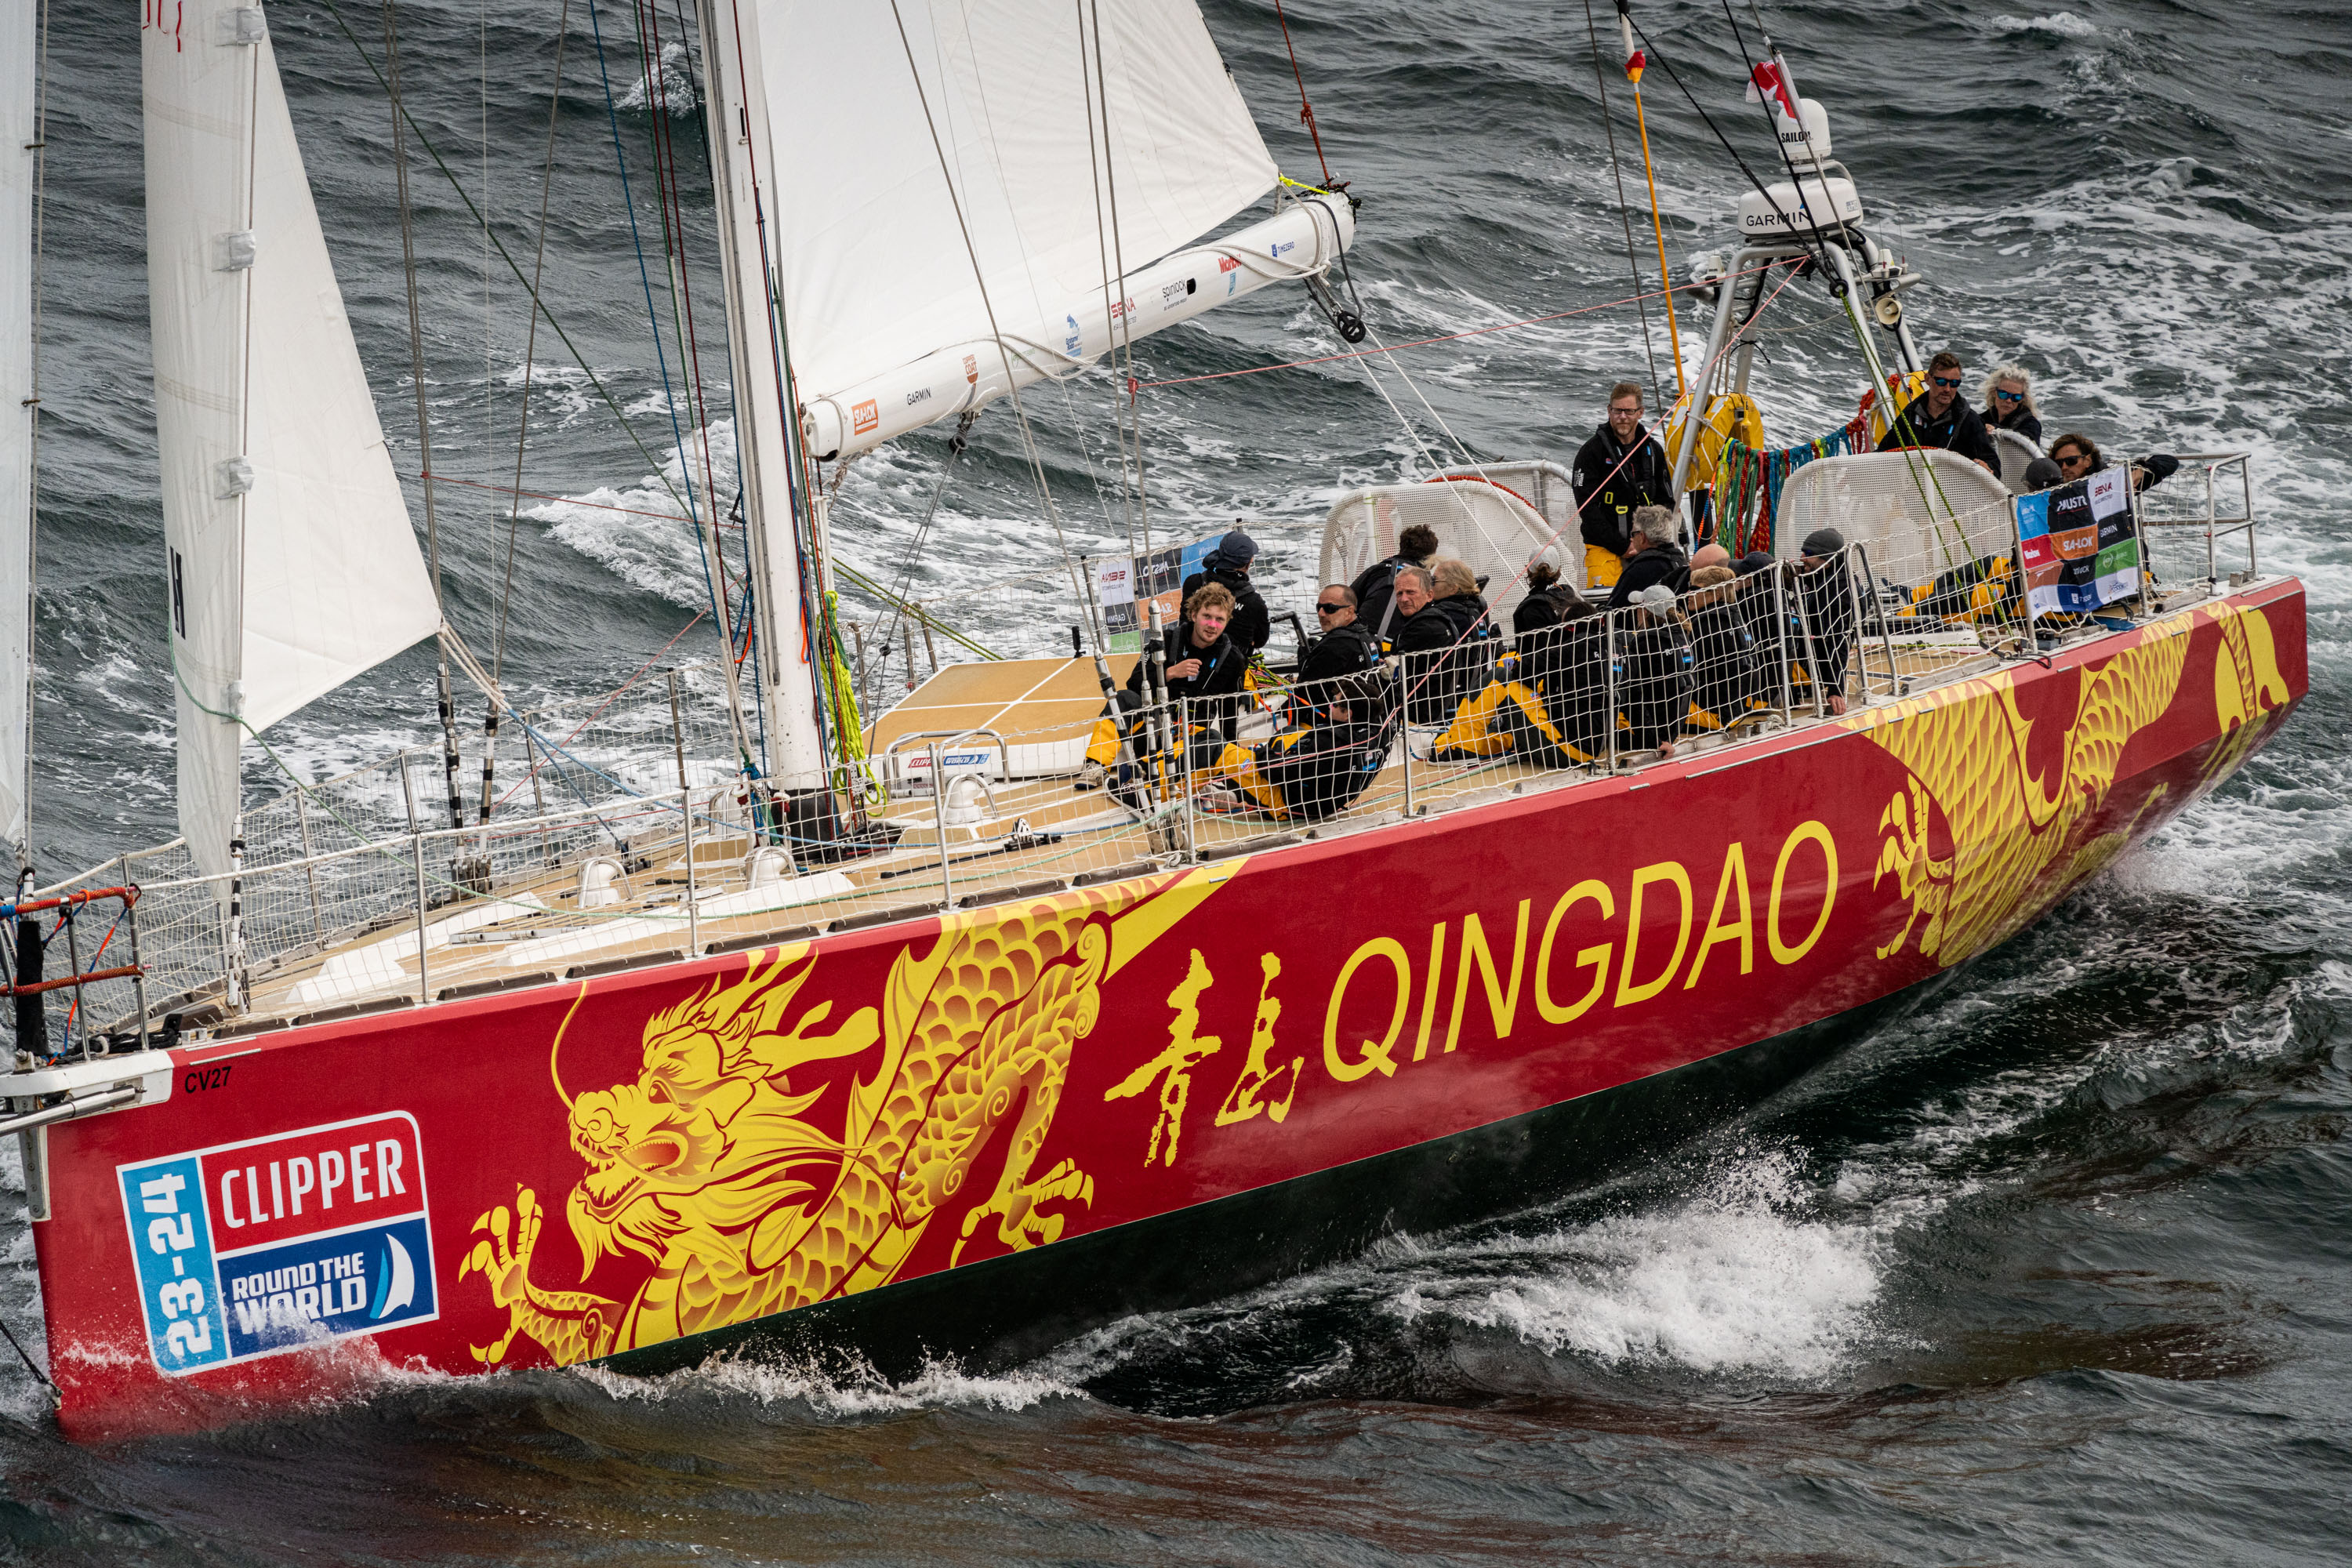 Qingdao professional sailing staff update  